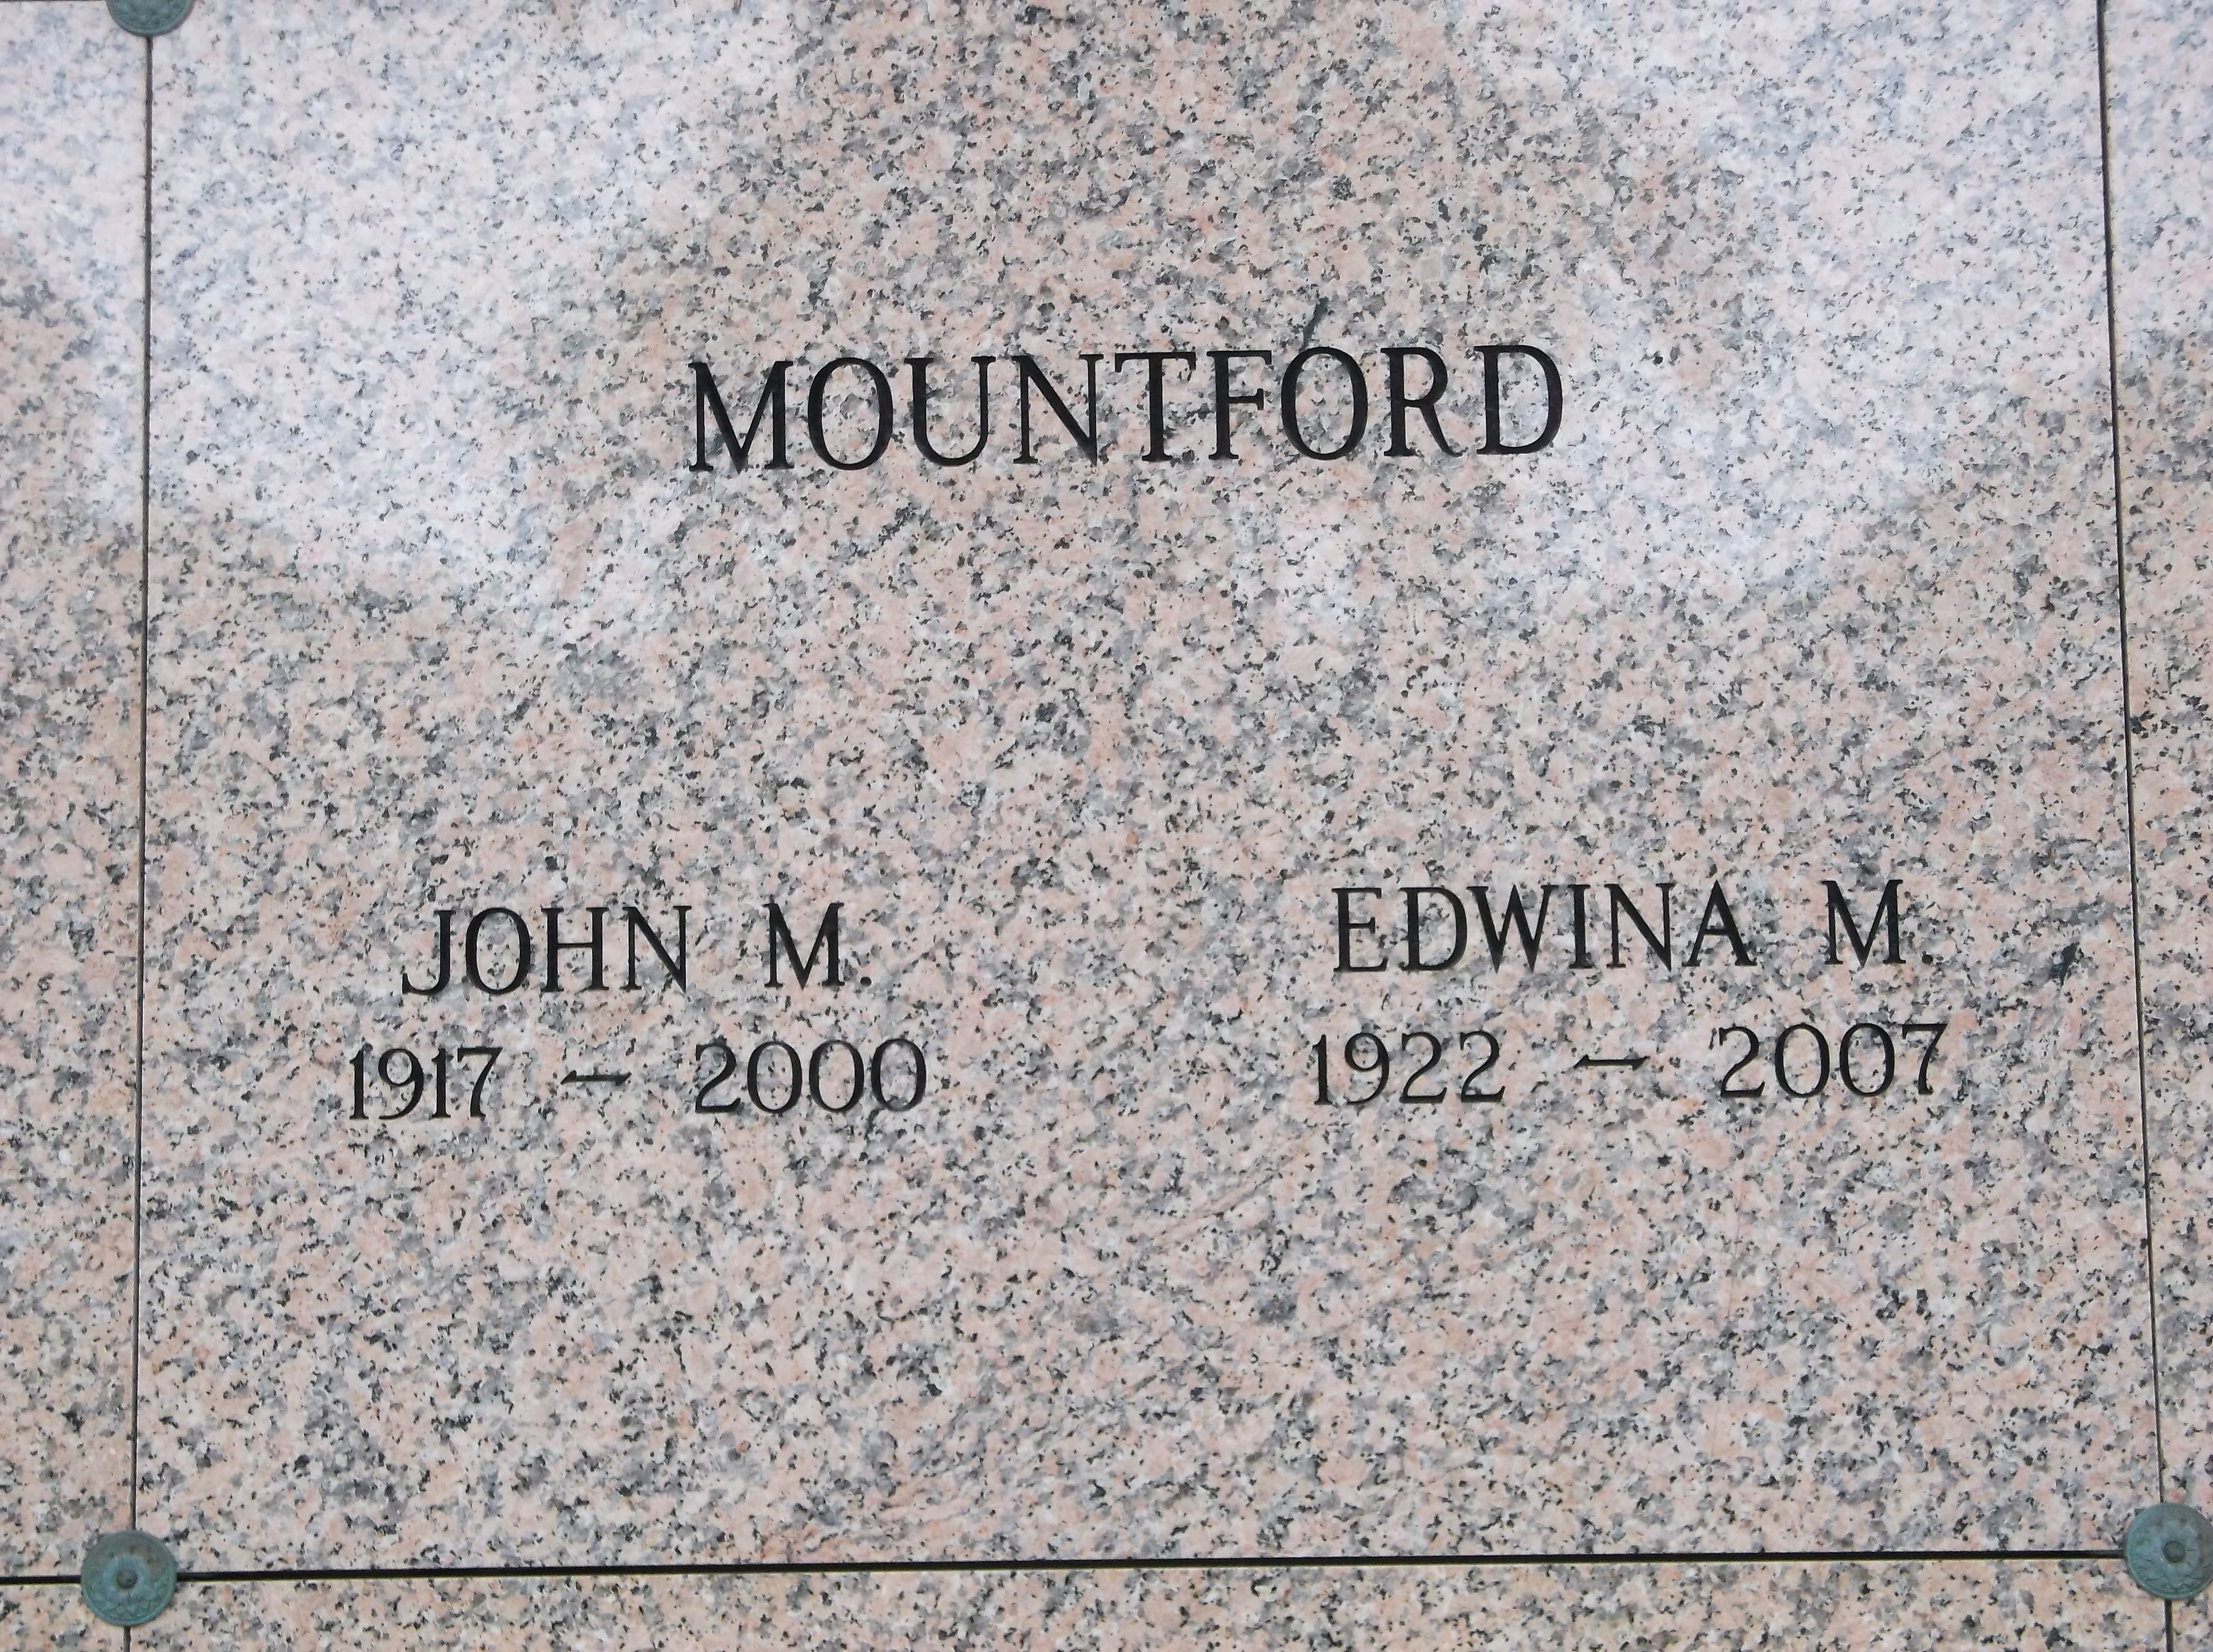 John M Mountford